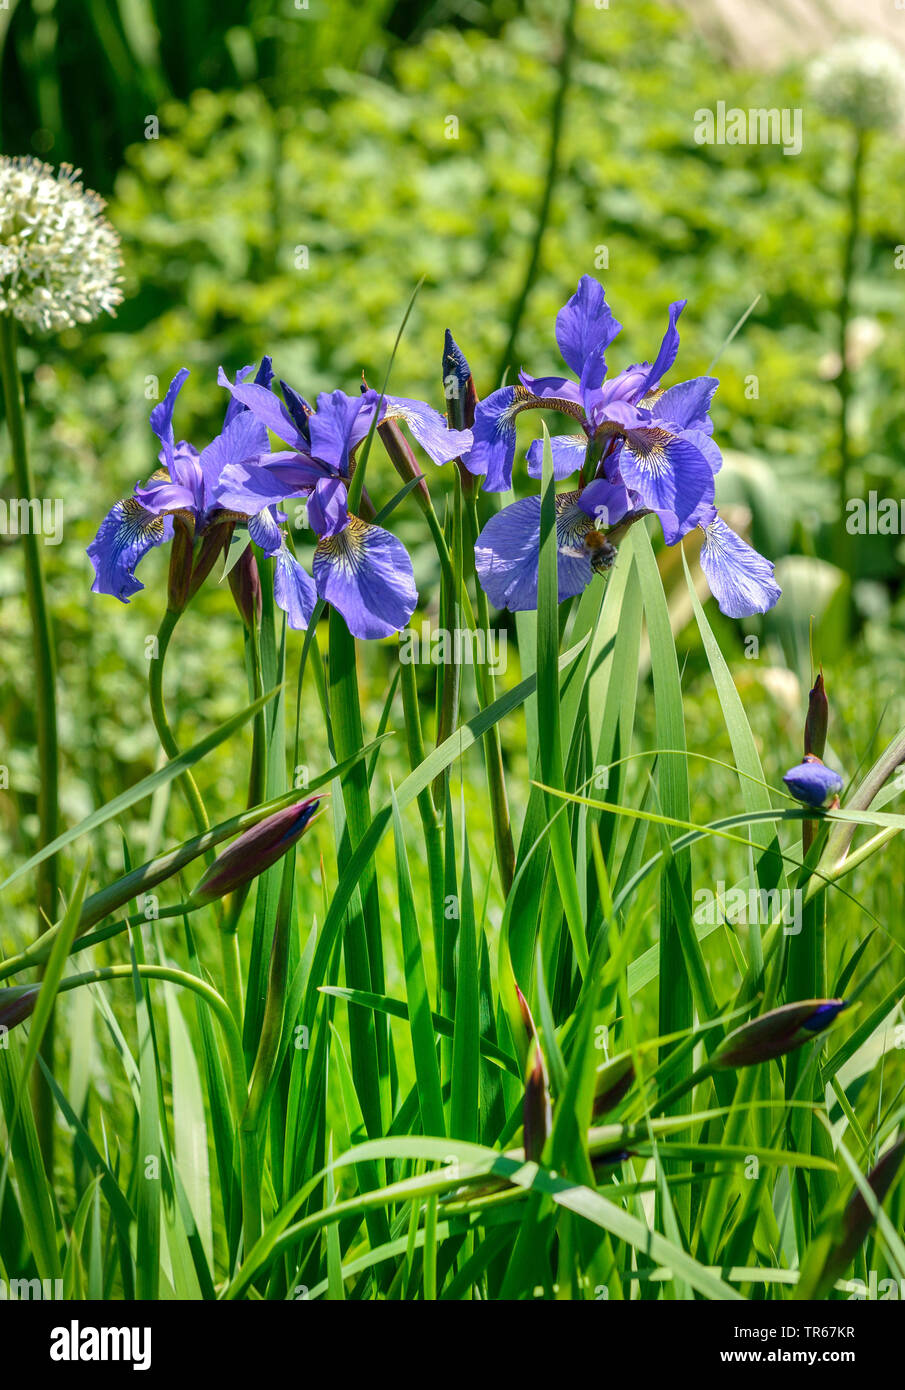 Iris de Sibérie, drapeau de Sibérie (Iris sibirica 'Annick', Iris sibirica Annick), la floraison, le cultivar Annick, ALLEMAGNE, Basse-Saxe Banque D'Images